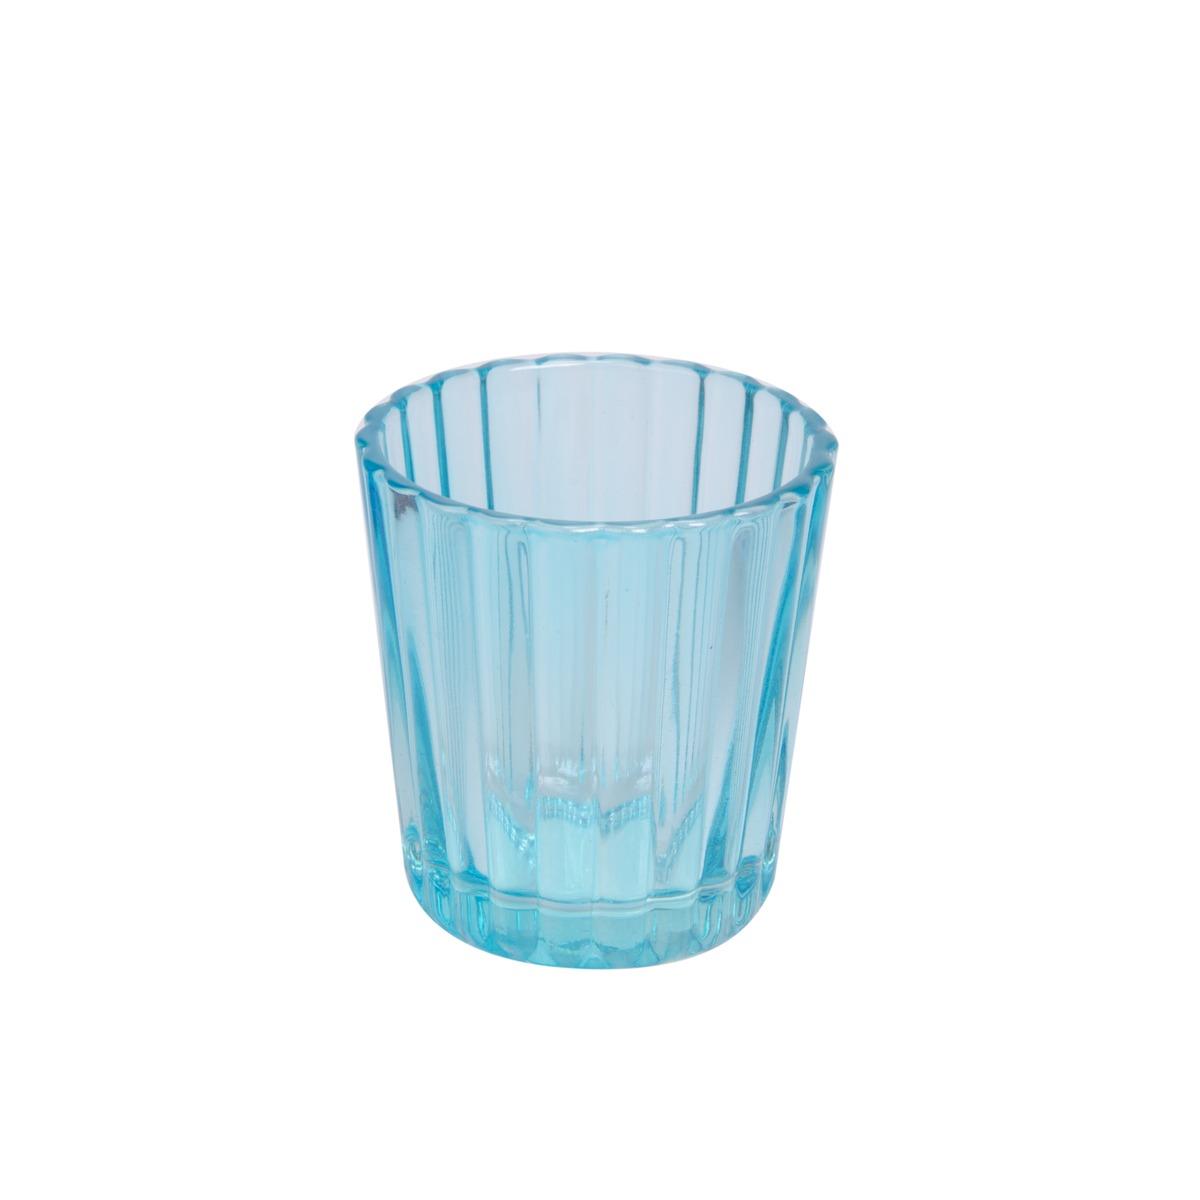 Photophore en verre - Diamètre 5,5 cm - Hauteur 6 cm - Bleu